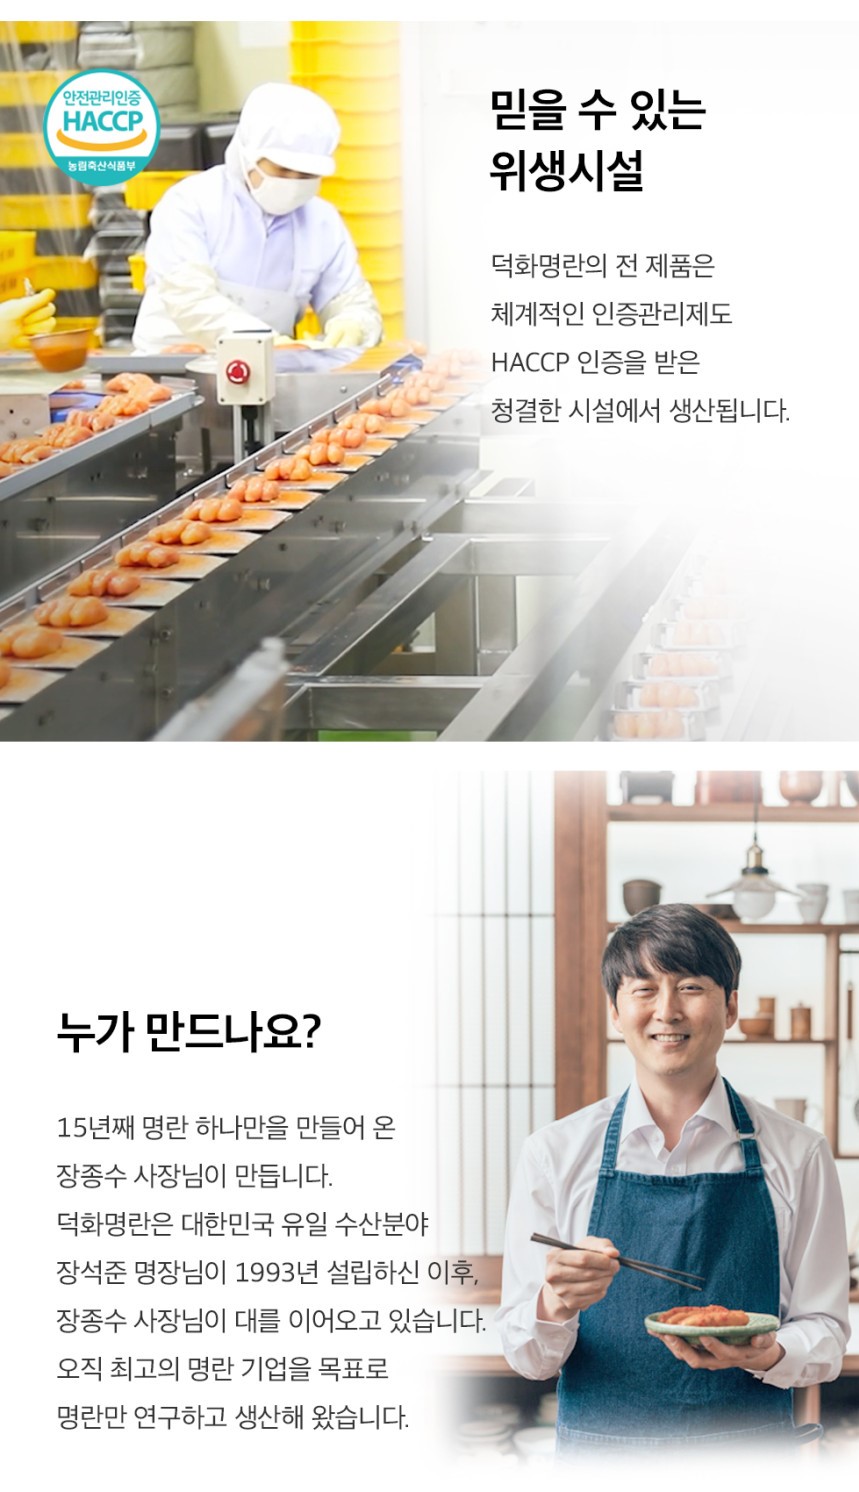 韓國食品-[Thedndshop] 枝裝明太魚醬 110g